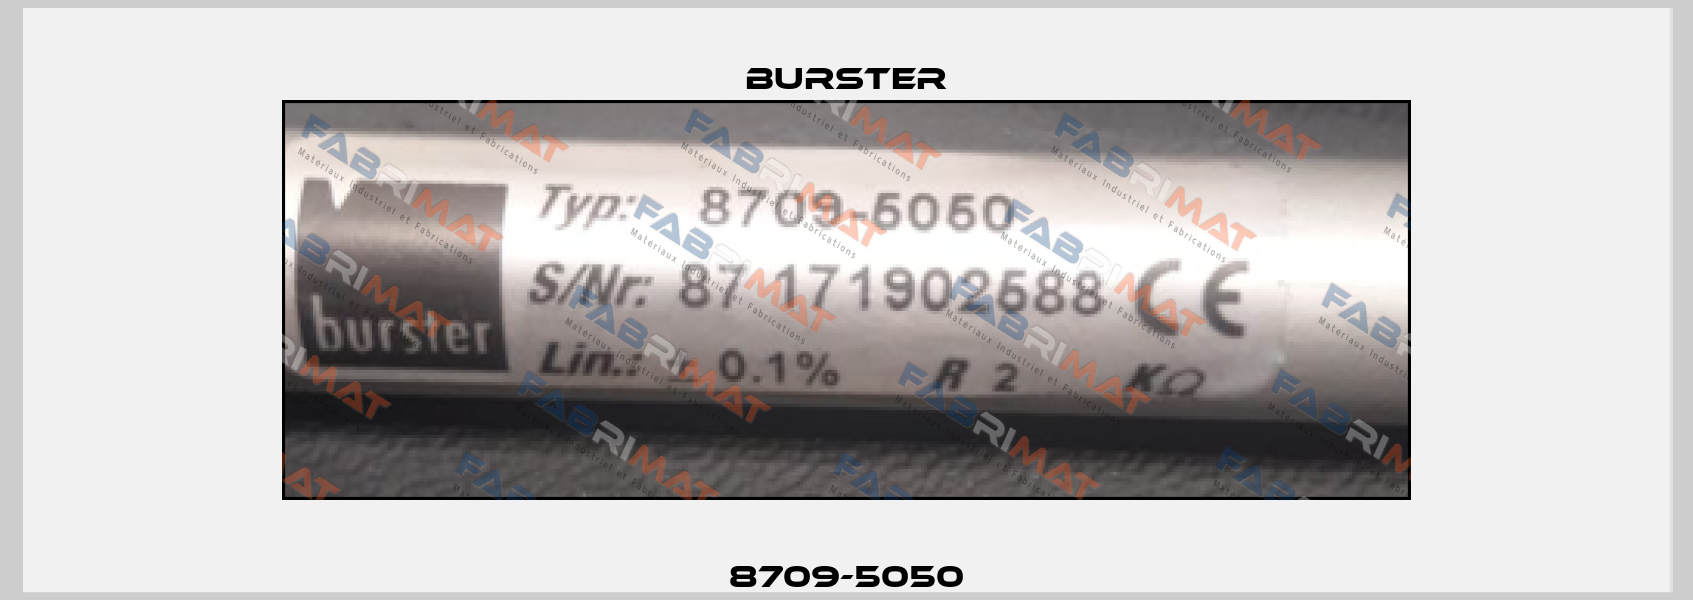 8709-5050 Burster